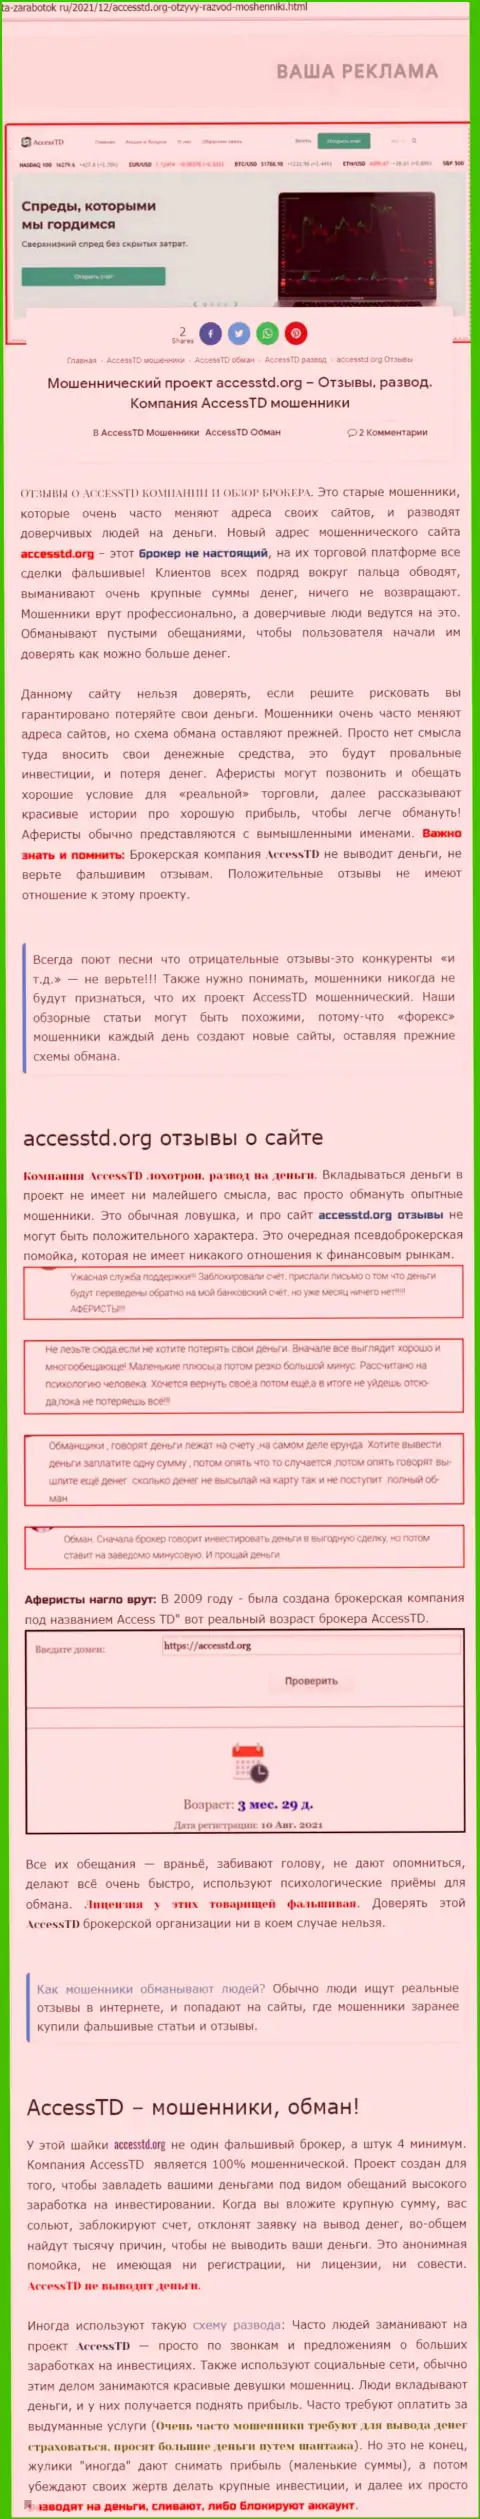 AccessTD - это МОШЕННИКИ !!! Обзор компании и отзывы пострадавших